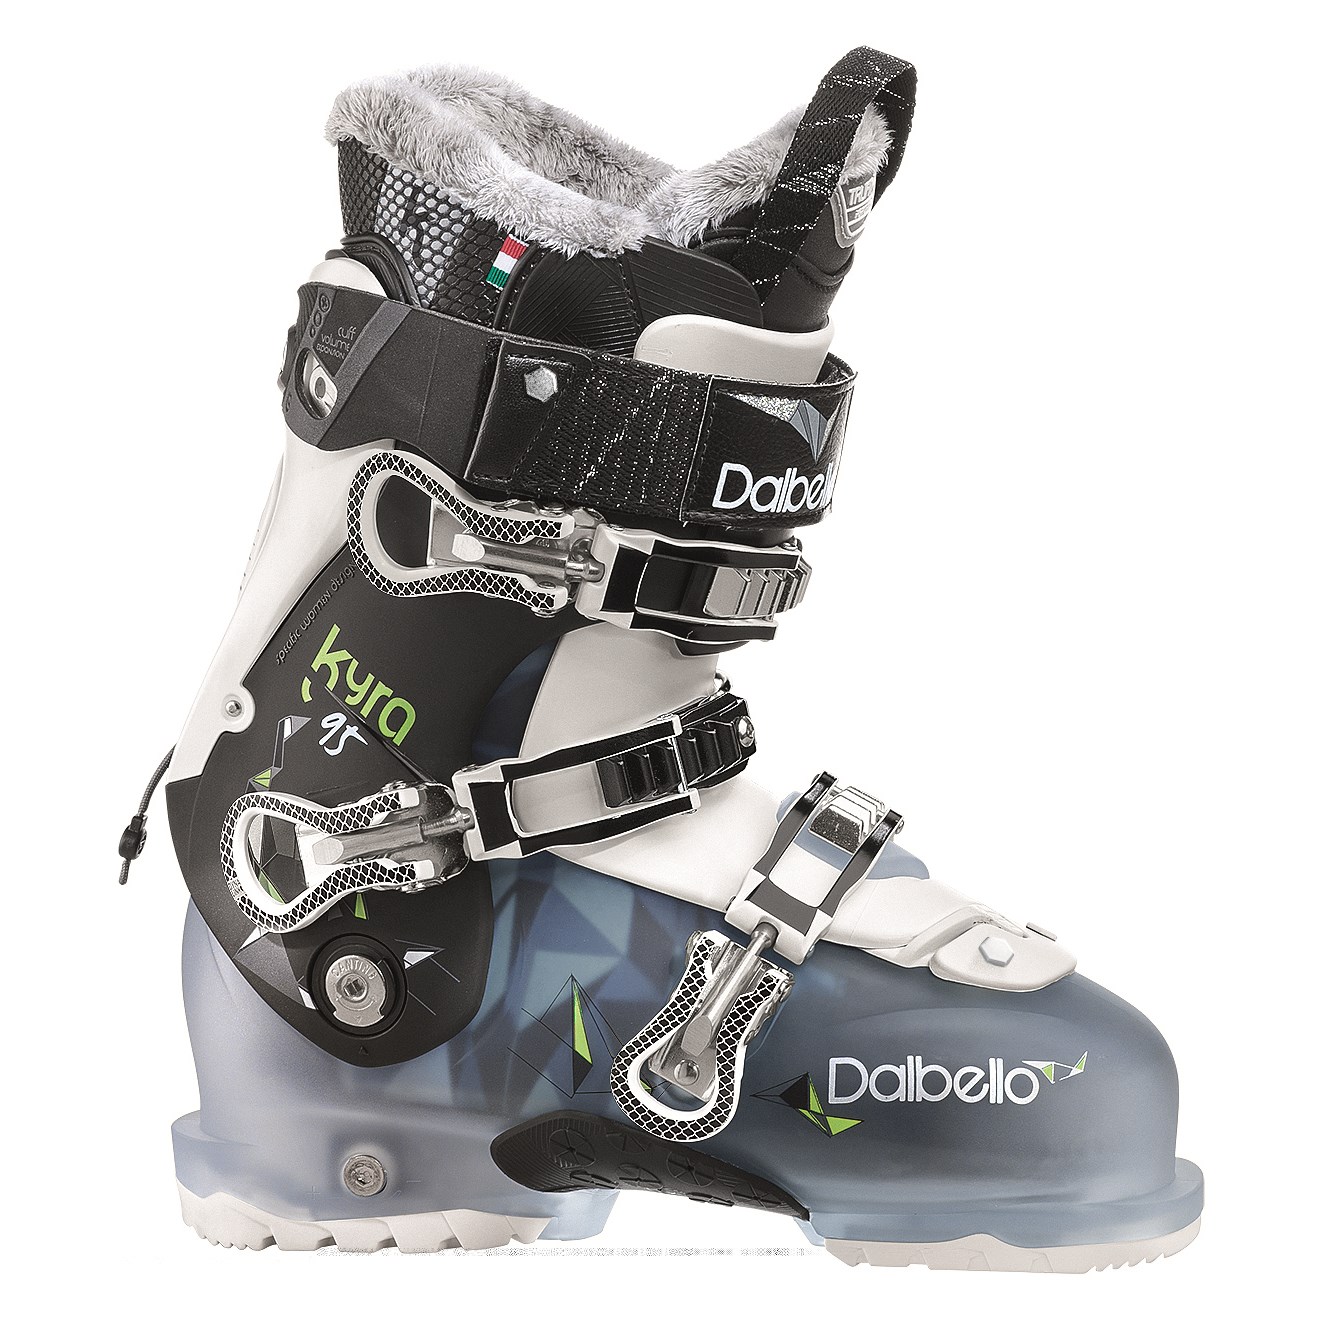 comfy ski boots